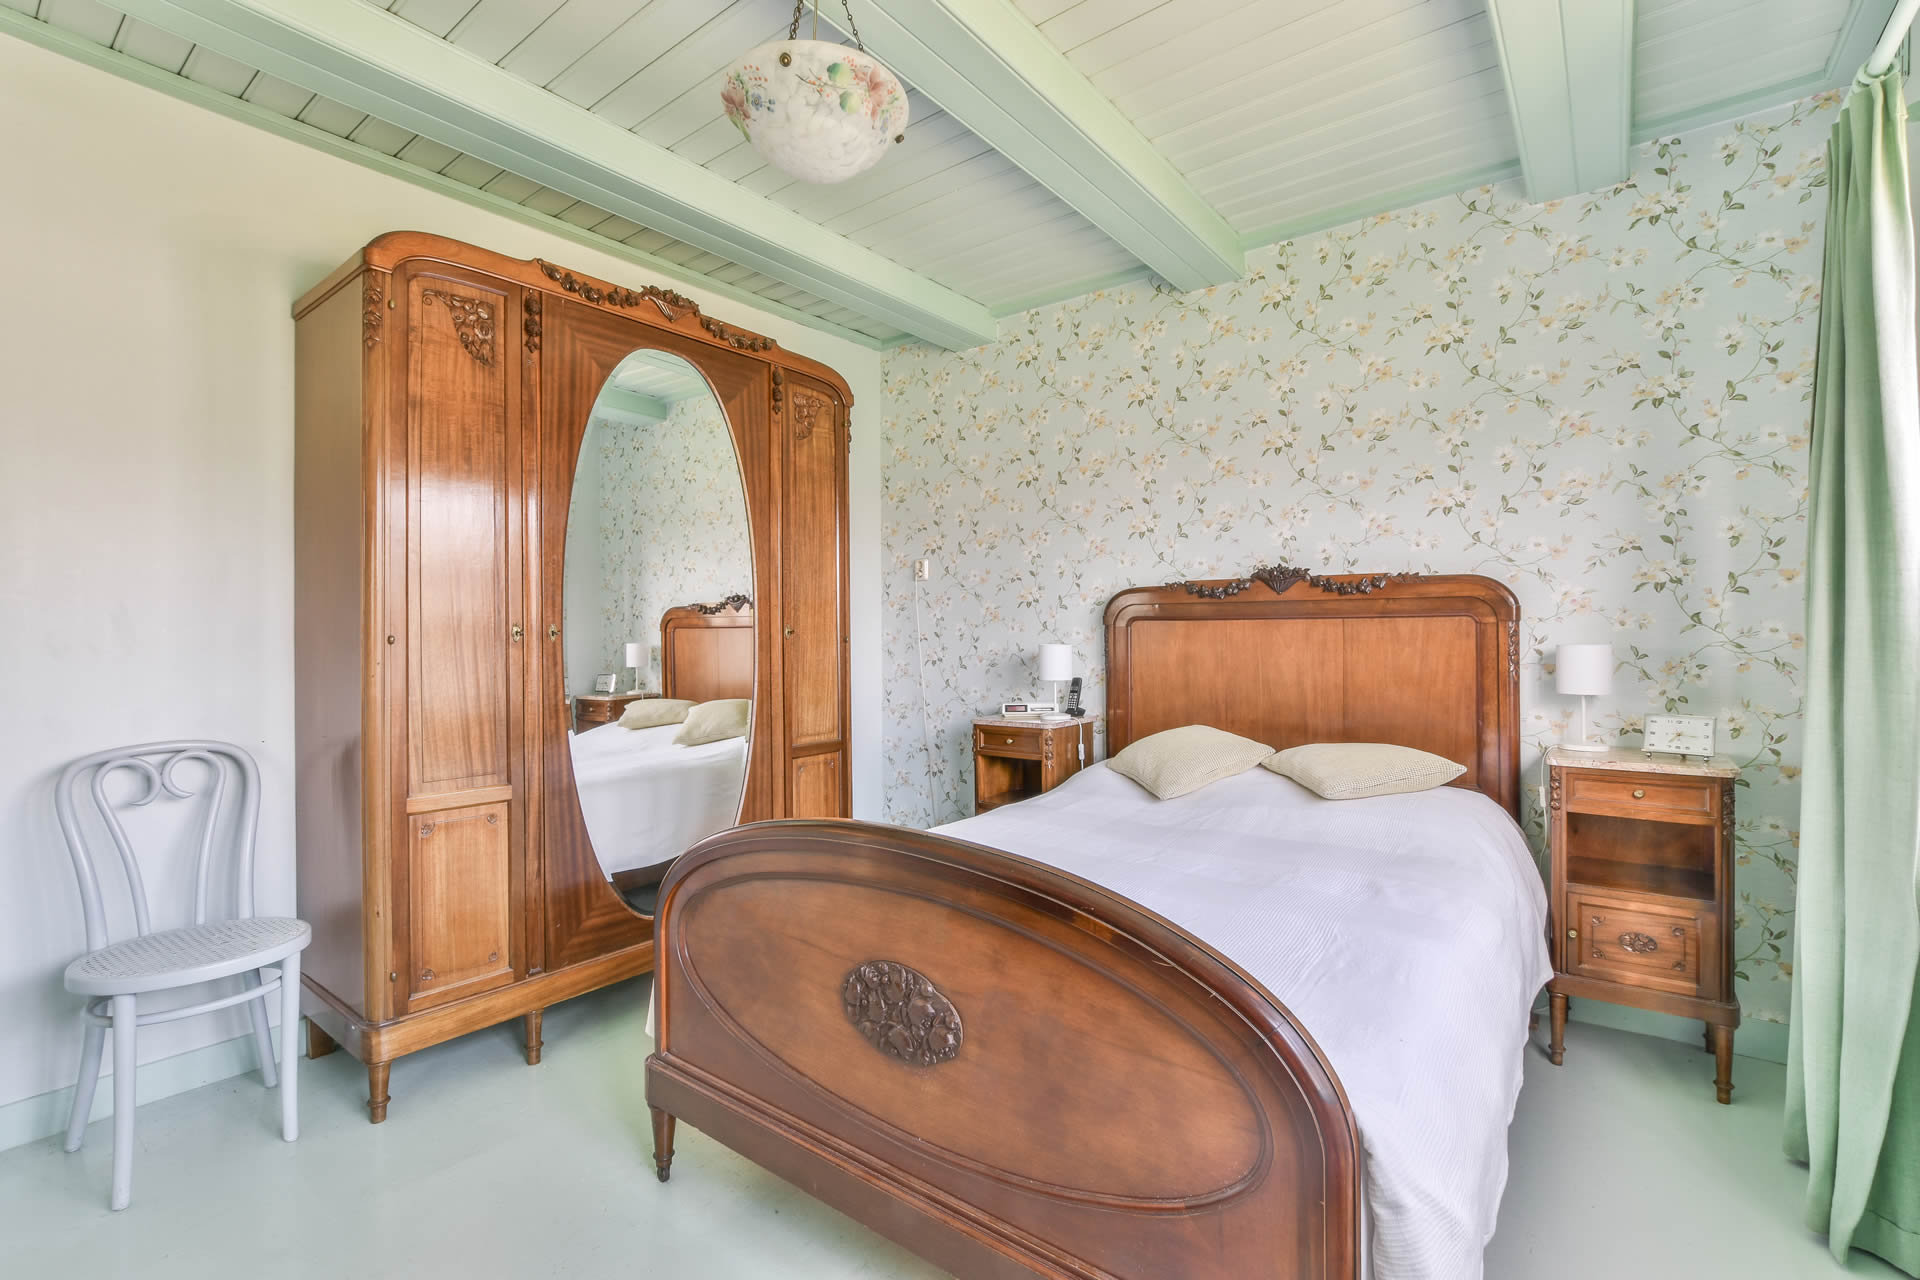 Camera da letto - stile vintage